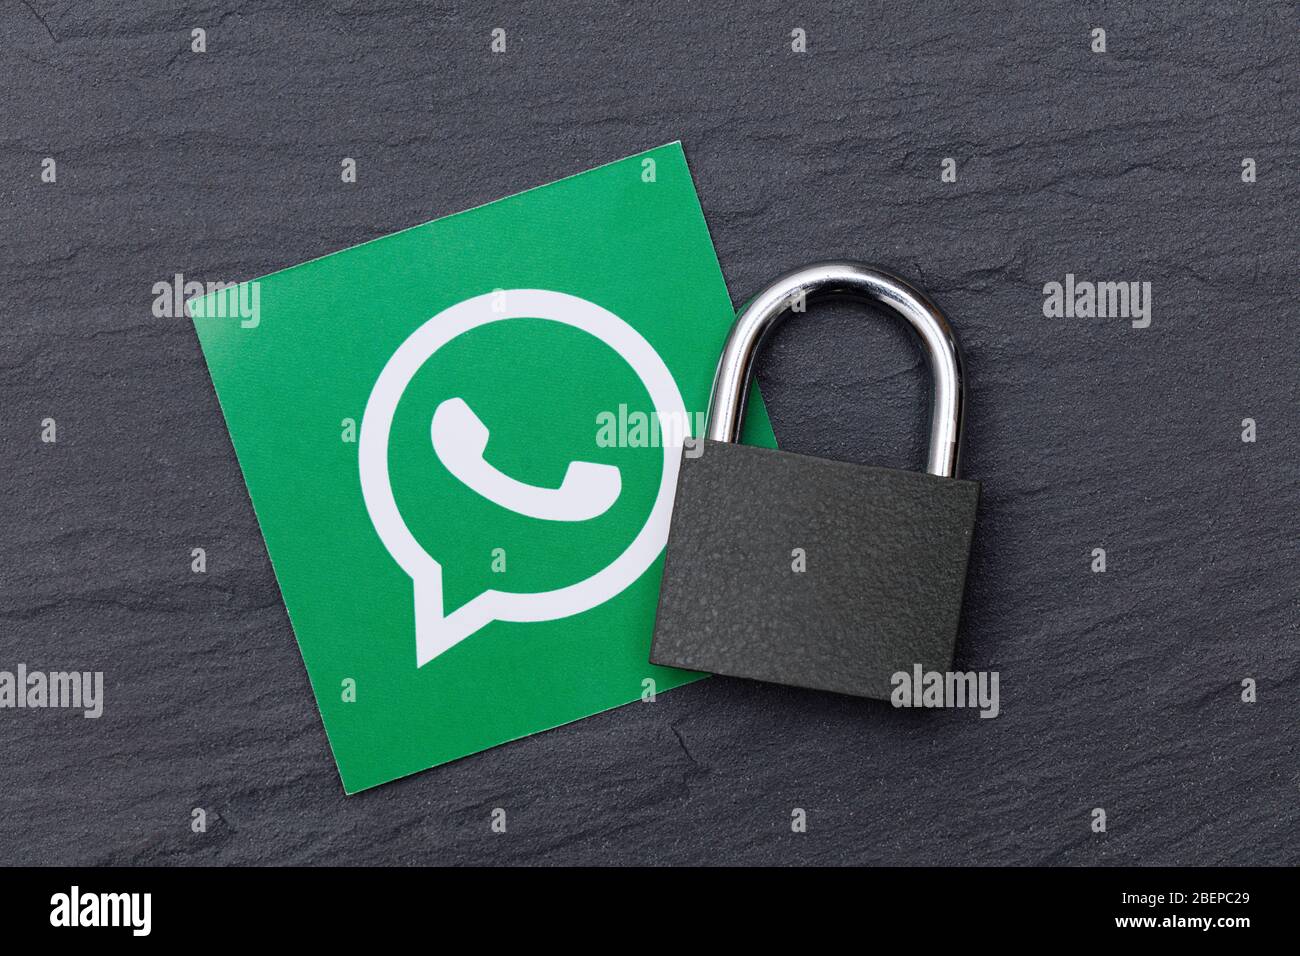 LONDRES, Royaume-Uni - 29 MARS 2017 : logo WhatsApp sur les réseaux sociaux avec cadenas de sécurité Banque D'Images